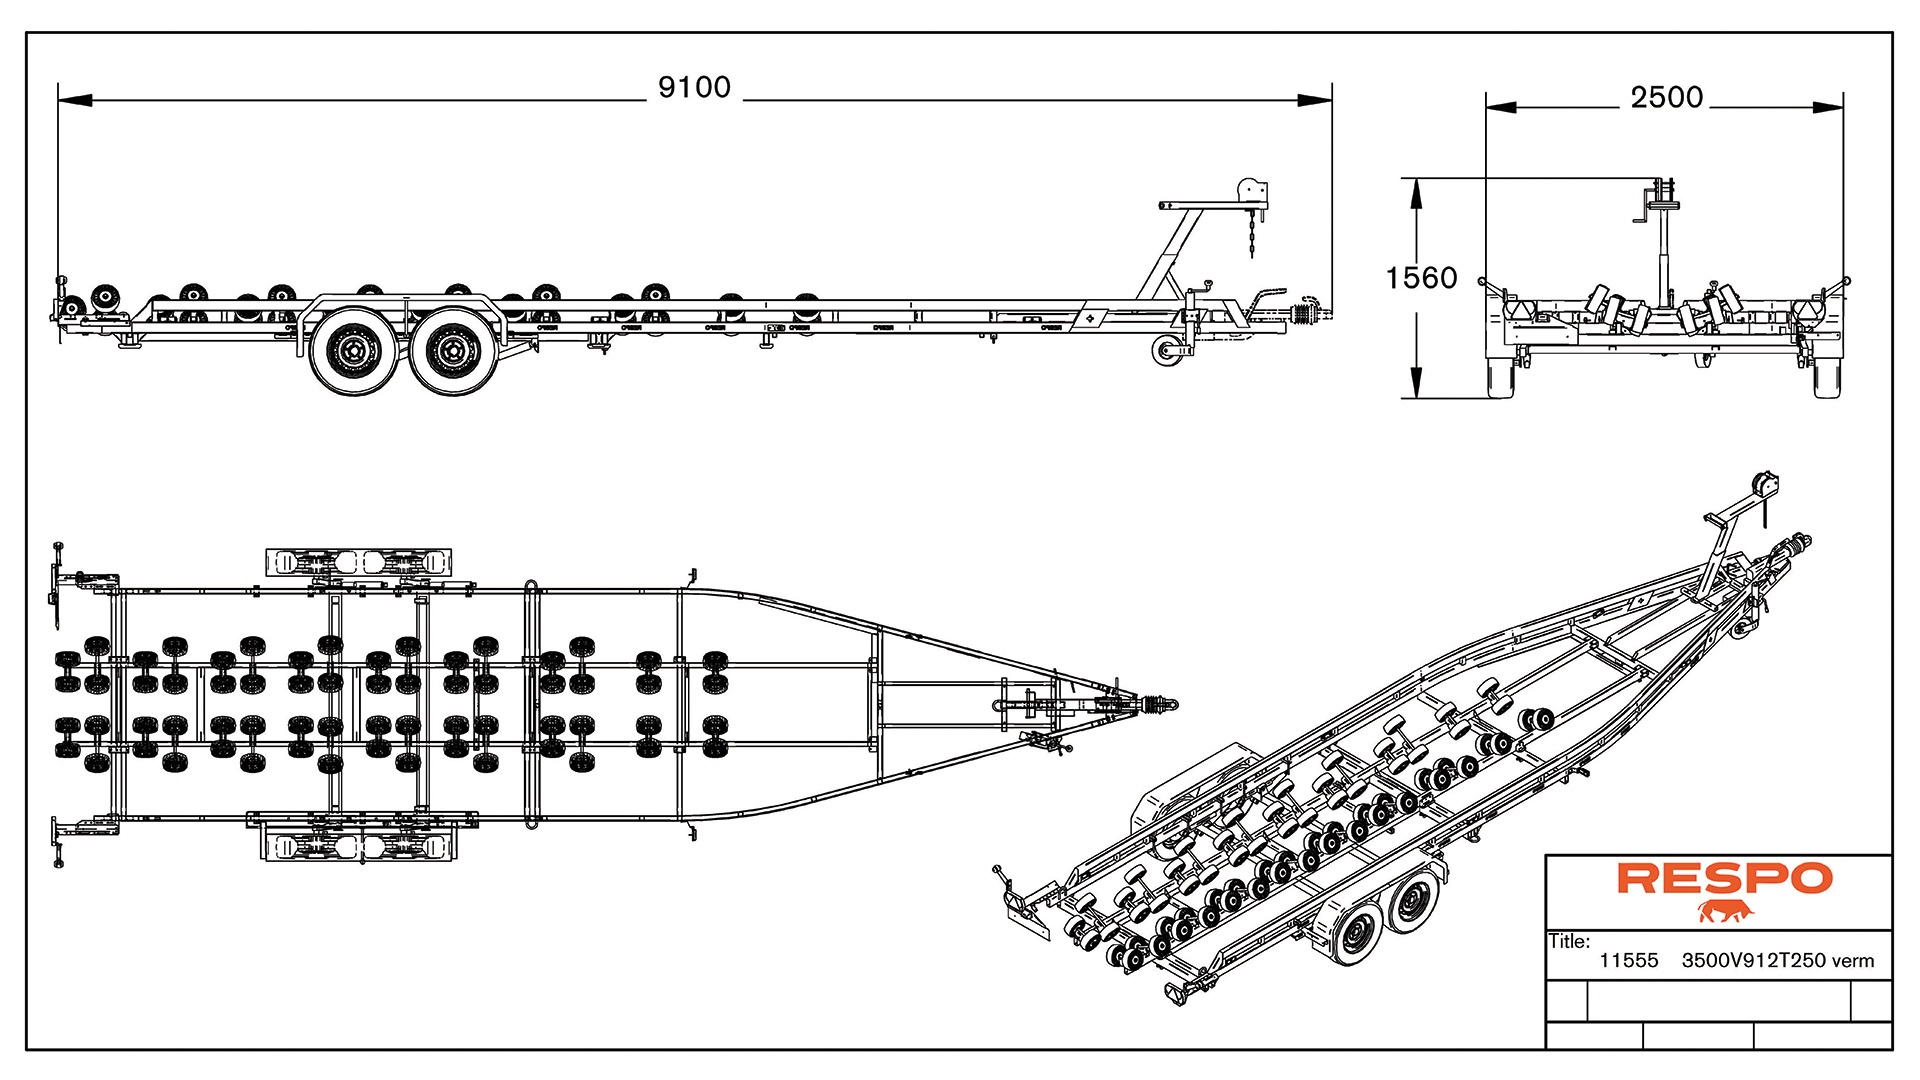 3500V912 Multiroller Heavy